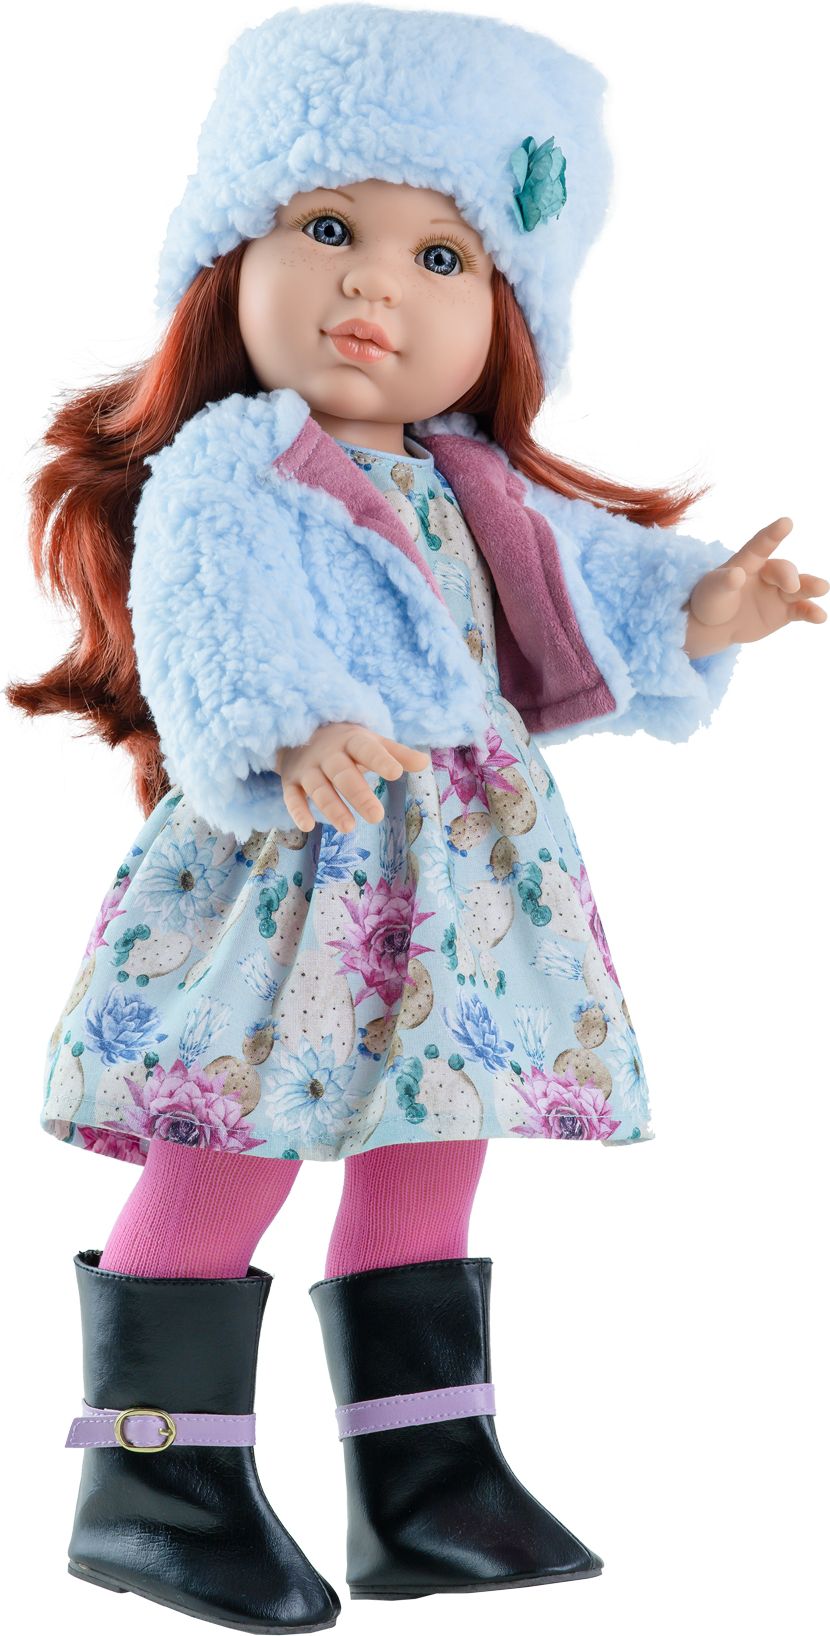 Realistická panenka Becky v modrém huňatém kabátku  od f. Paola Reina - obrázek 1